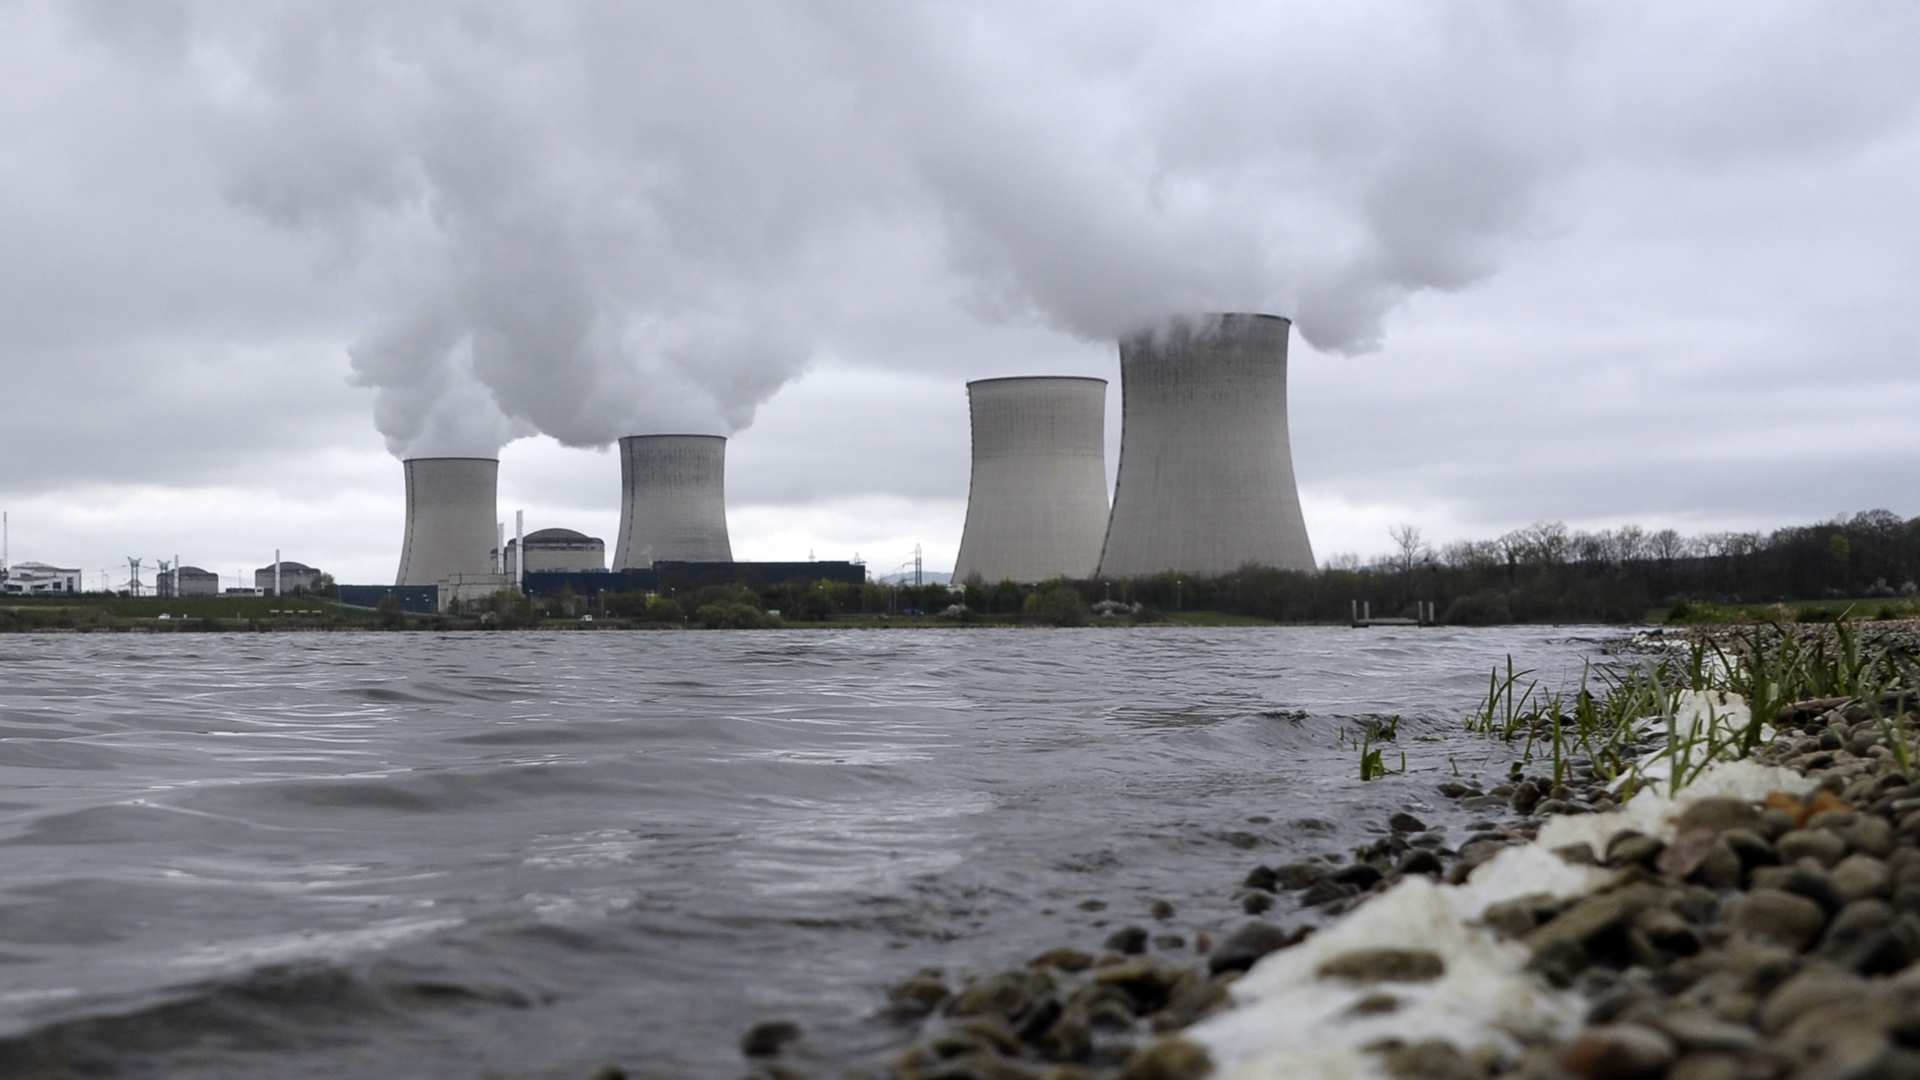 Riunione dei ministri dell’energia dell’Unione europea: 11 paesi Ue si accordano sull’alleanza nucleare